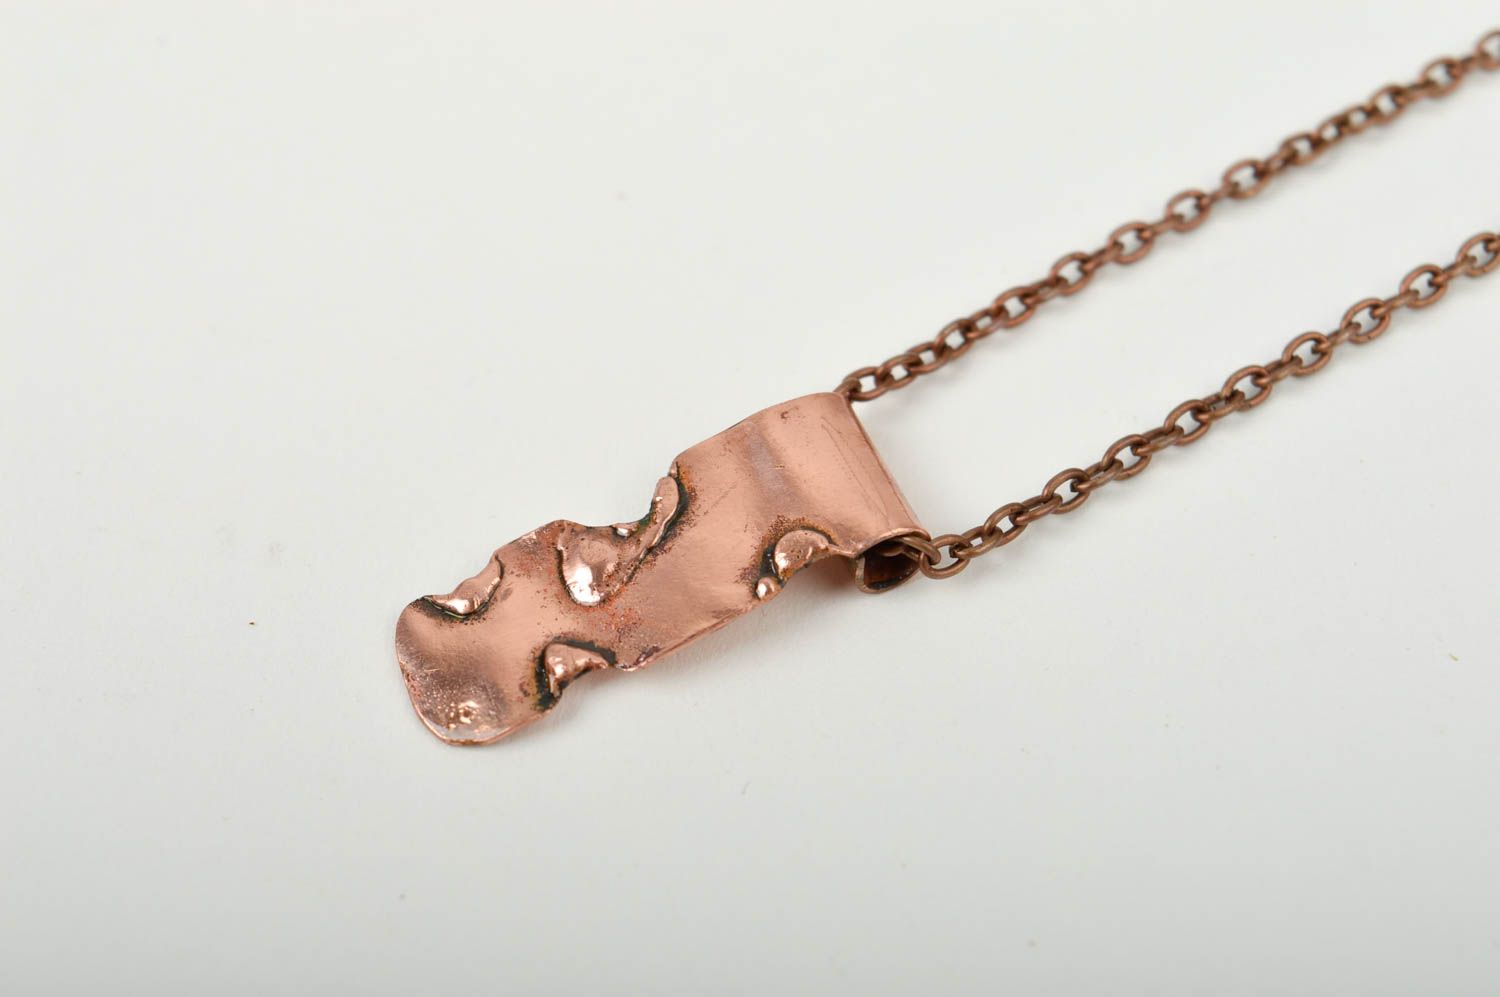 Stylish handmade metal pendant beautiful jewellery fashion trends small gifts photo 4